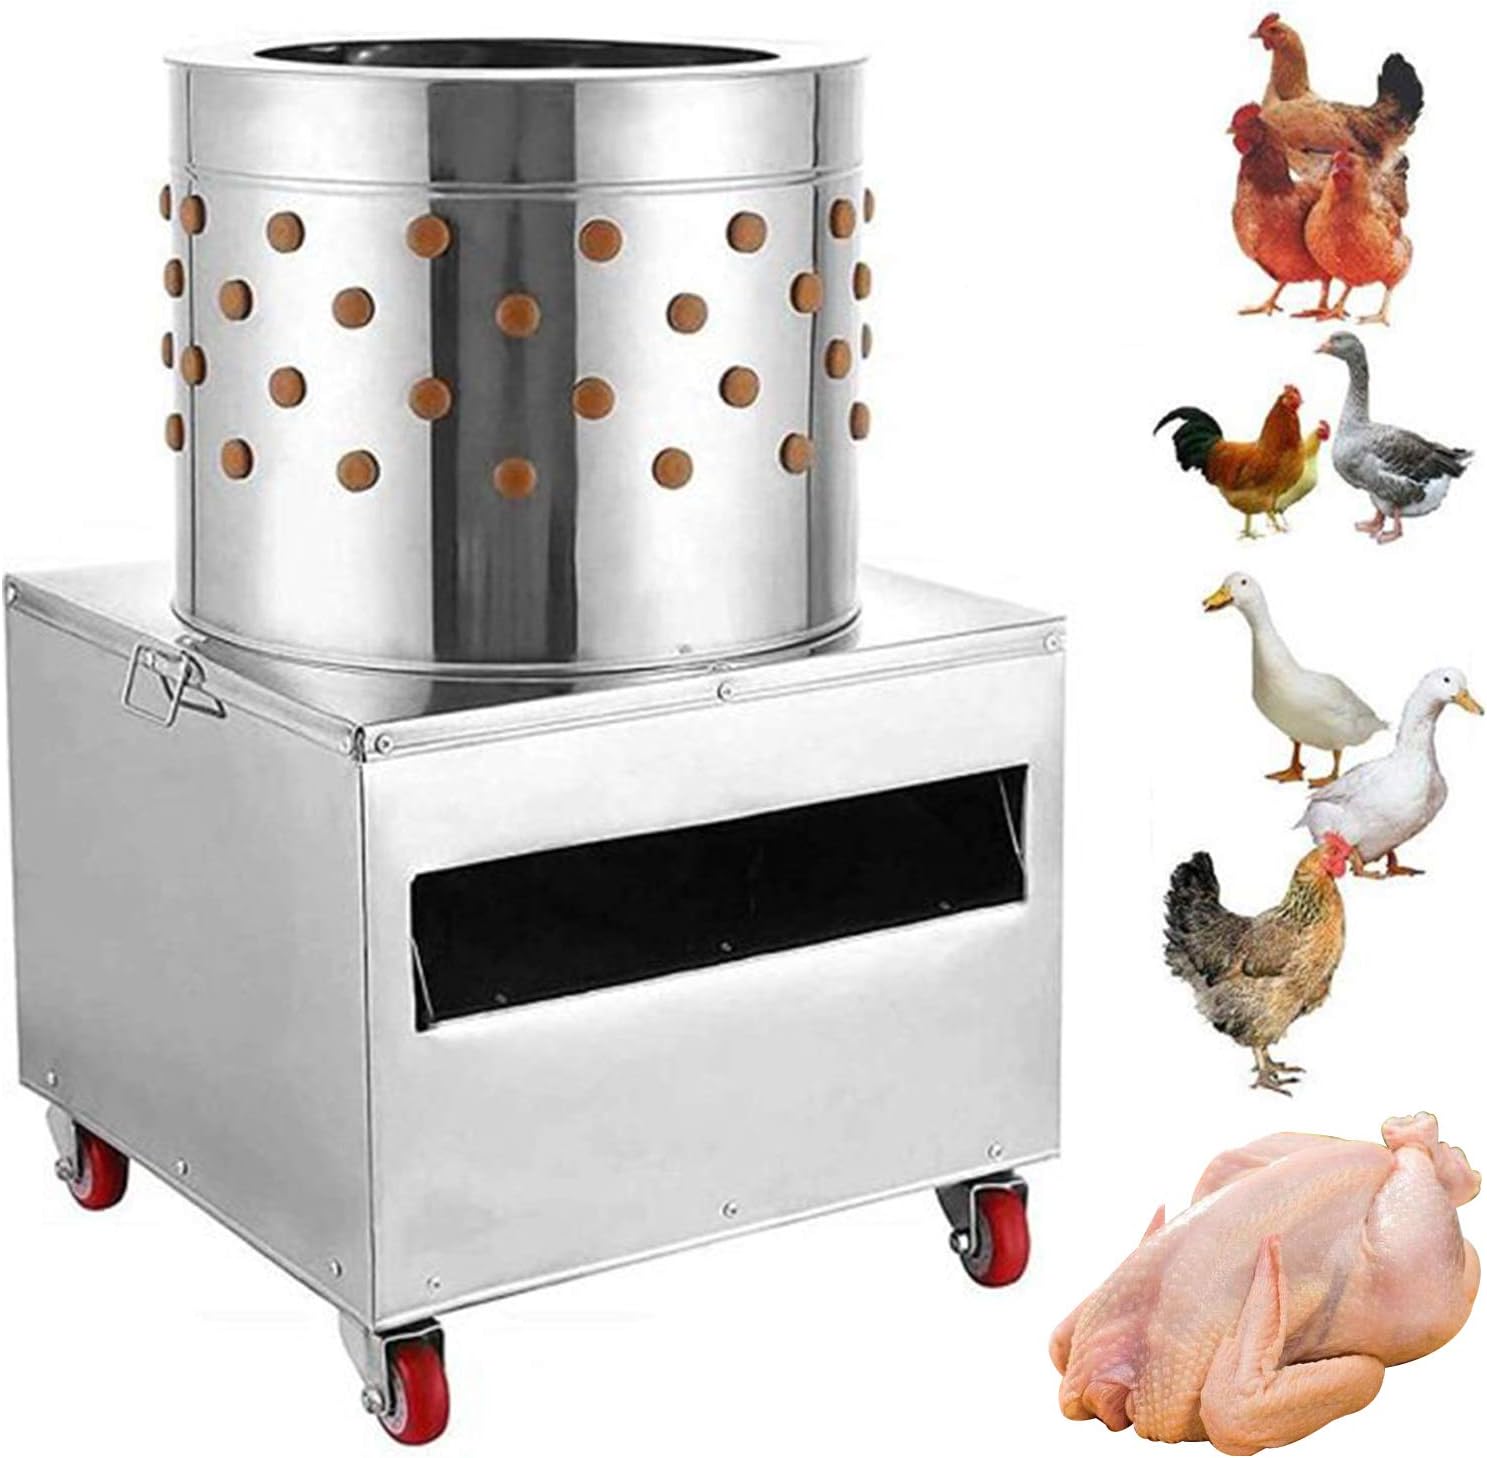 wuyule Chicken Plucker Machine